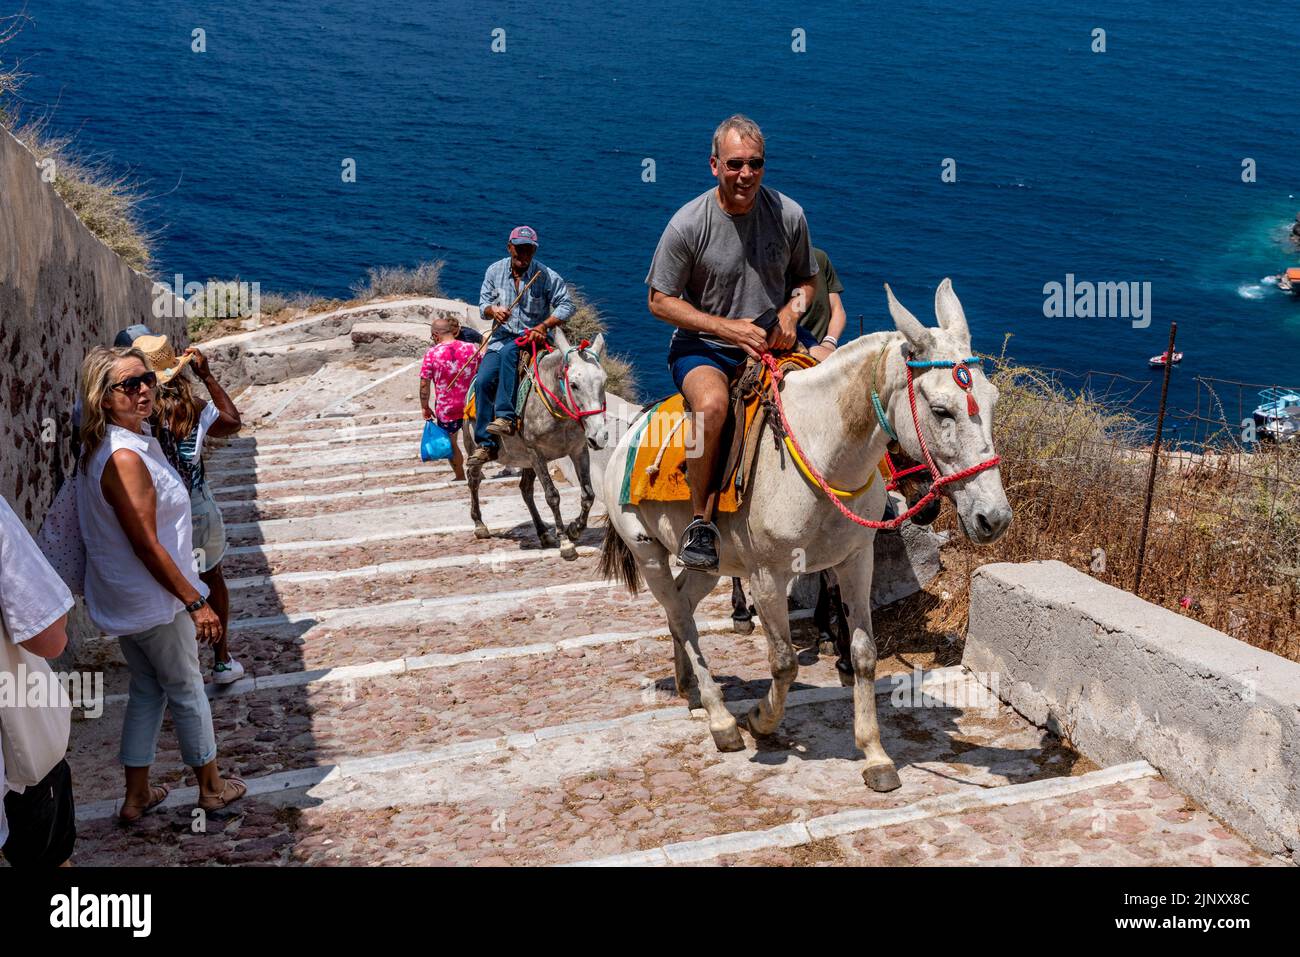 Les touristes se rendent sur le sentier escarpé du port d'Oia à la ville d'Oia par Donkey, Santorini, Iles grecques, Grèce. Banque D'Images